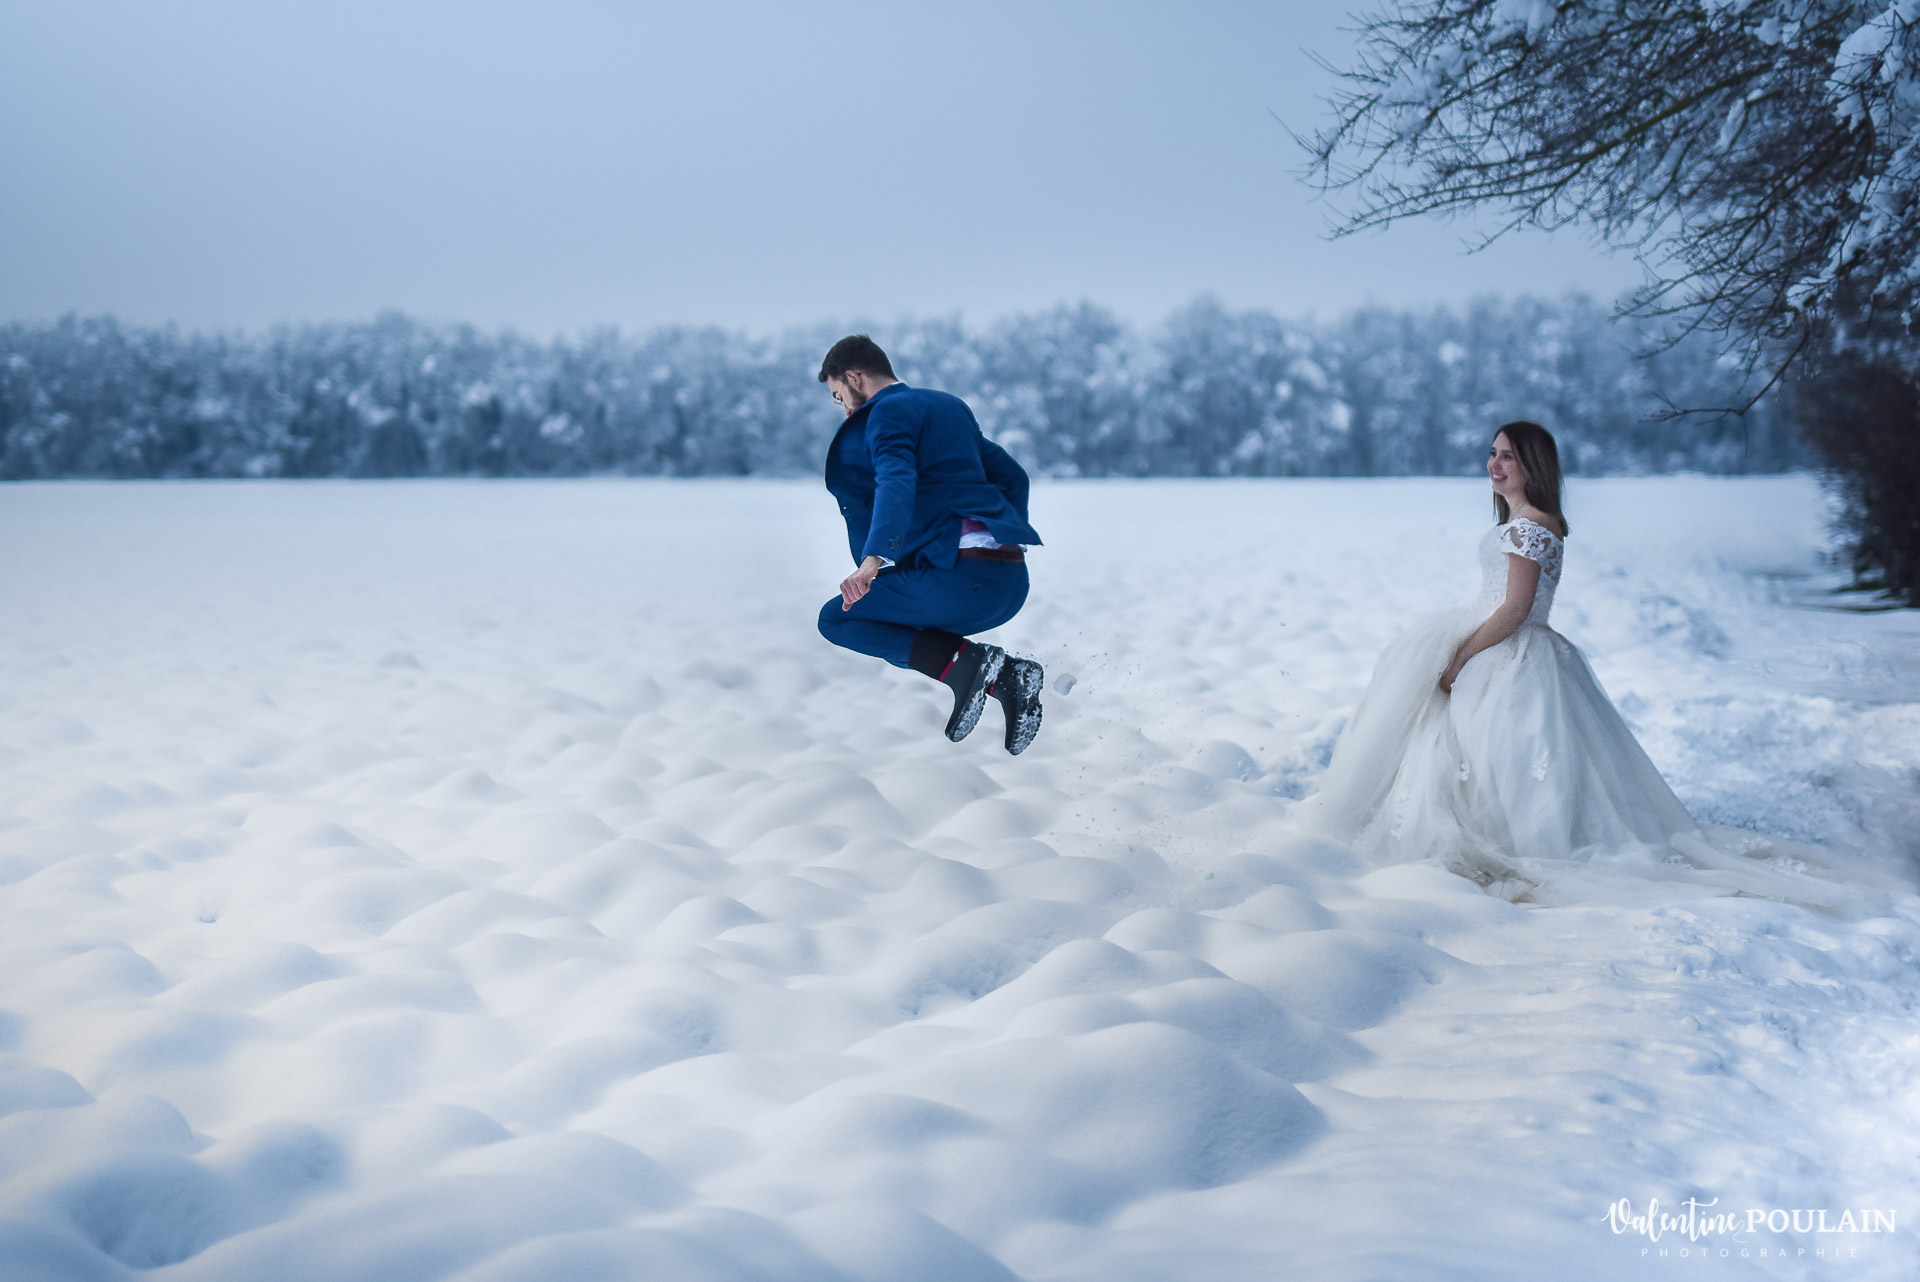 Photo mariage neige hiver - Valentine Poulain saut